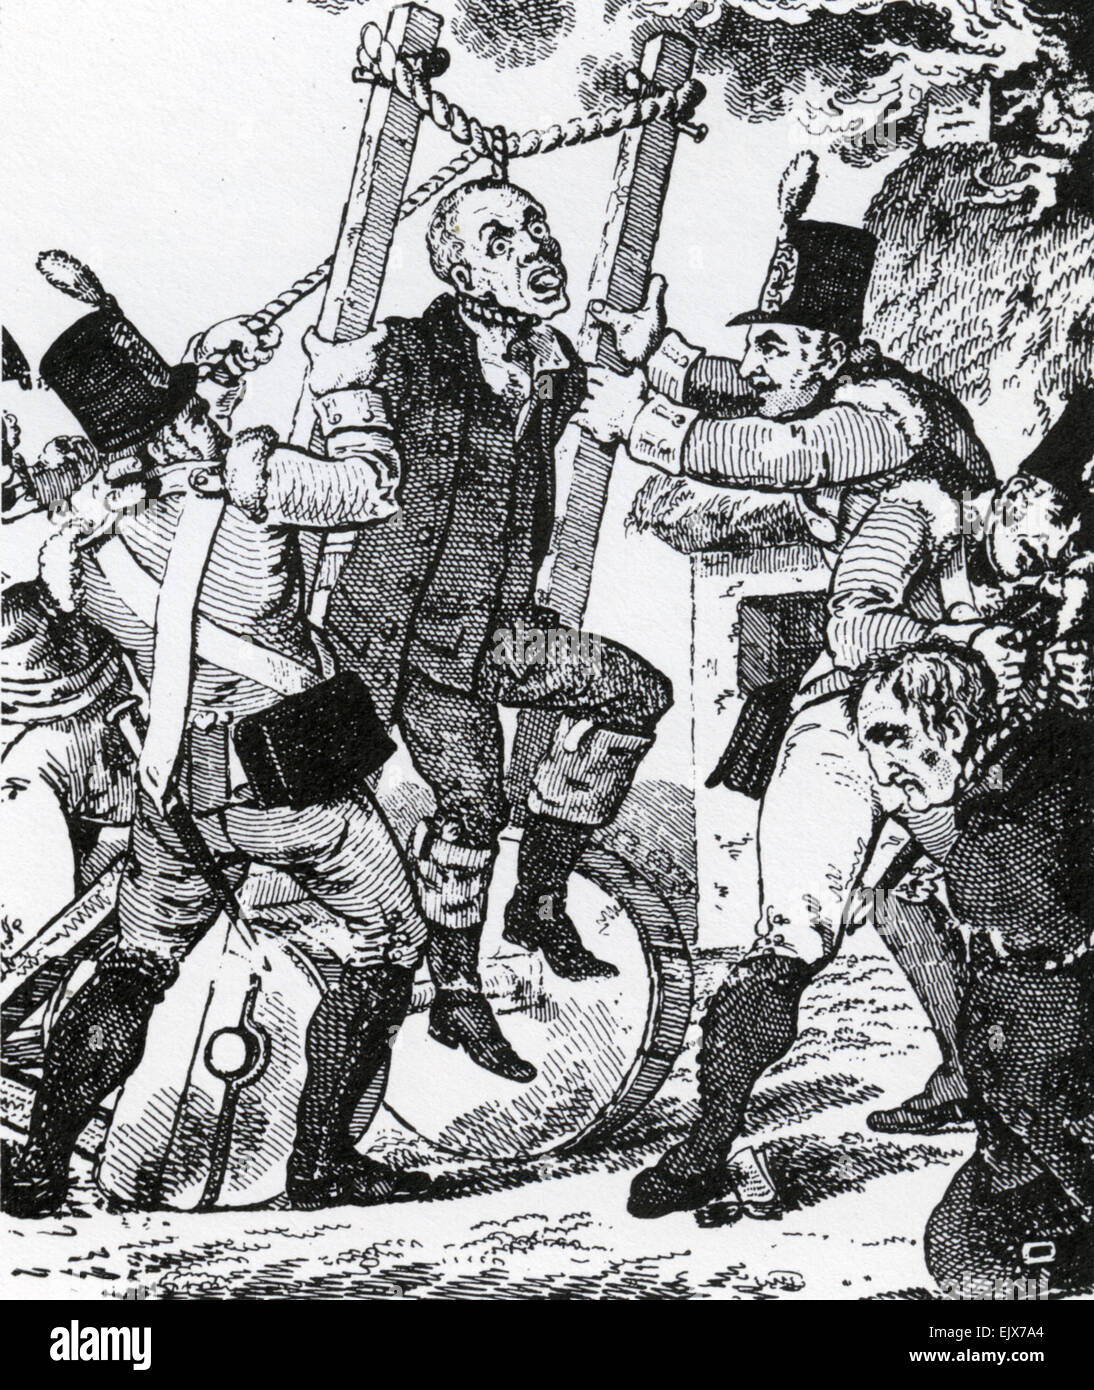 1798 La rébellion irlandaise potence Portable selon Walter Cox's Irish Revue mensuelle en 1810. Peut-être fictive. Banque D'Images